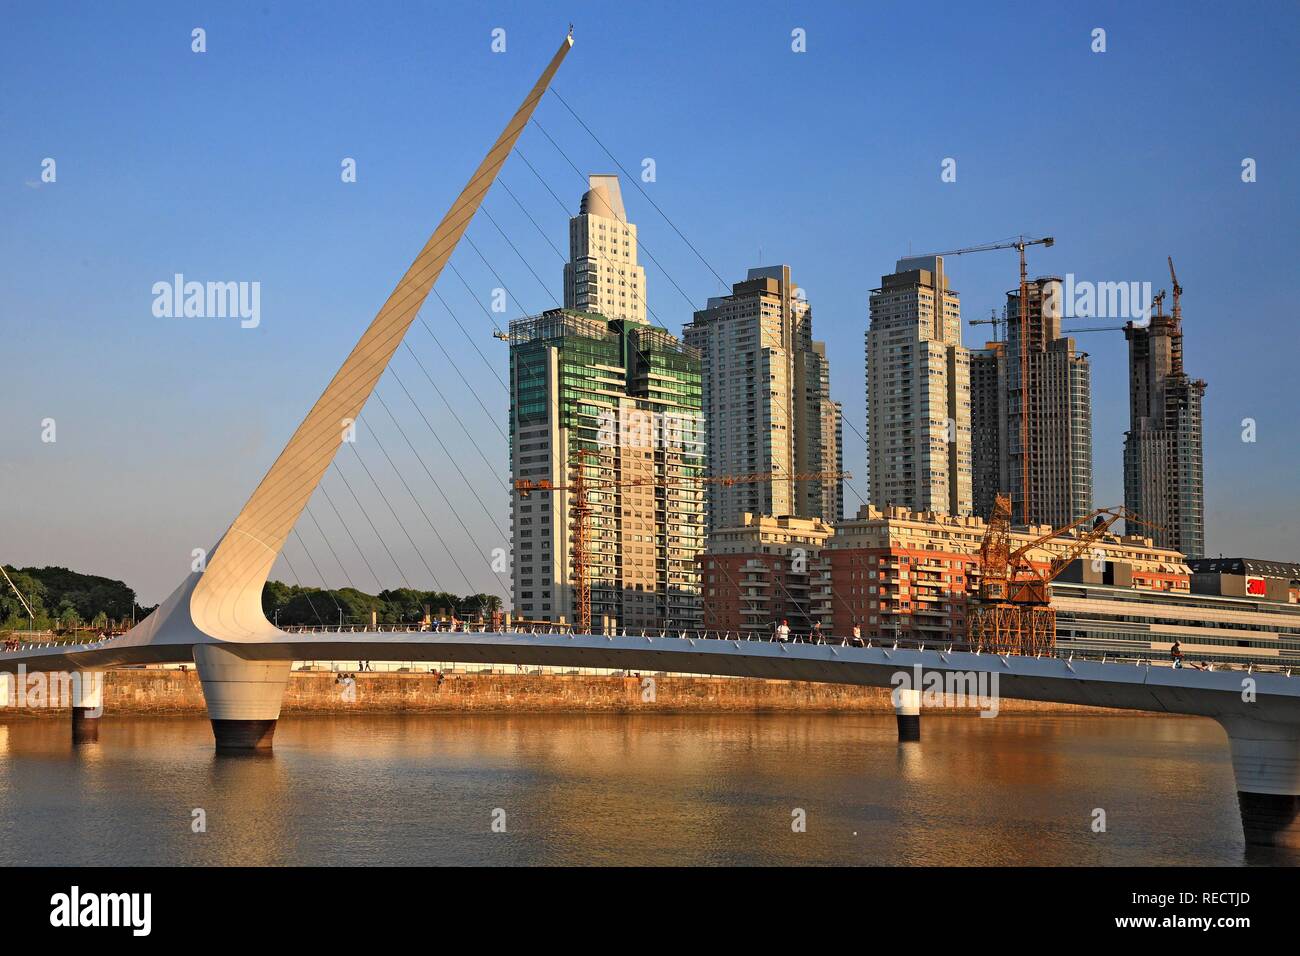 Der Frau Brücke Puente de La Mujer, Architekt Santiago Calatrava, Puerto Madero Bezirk, Buenos Aires, Argentinien Stockfoto